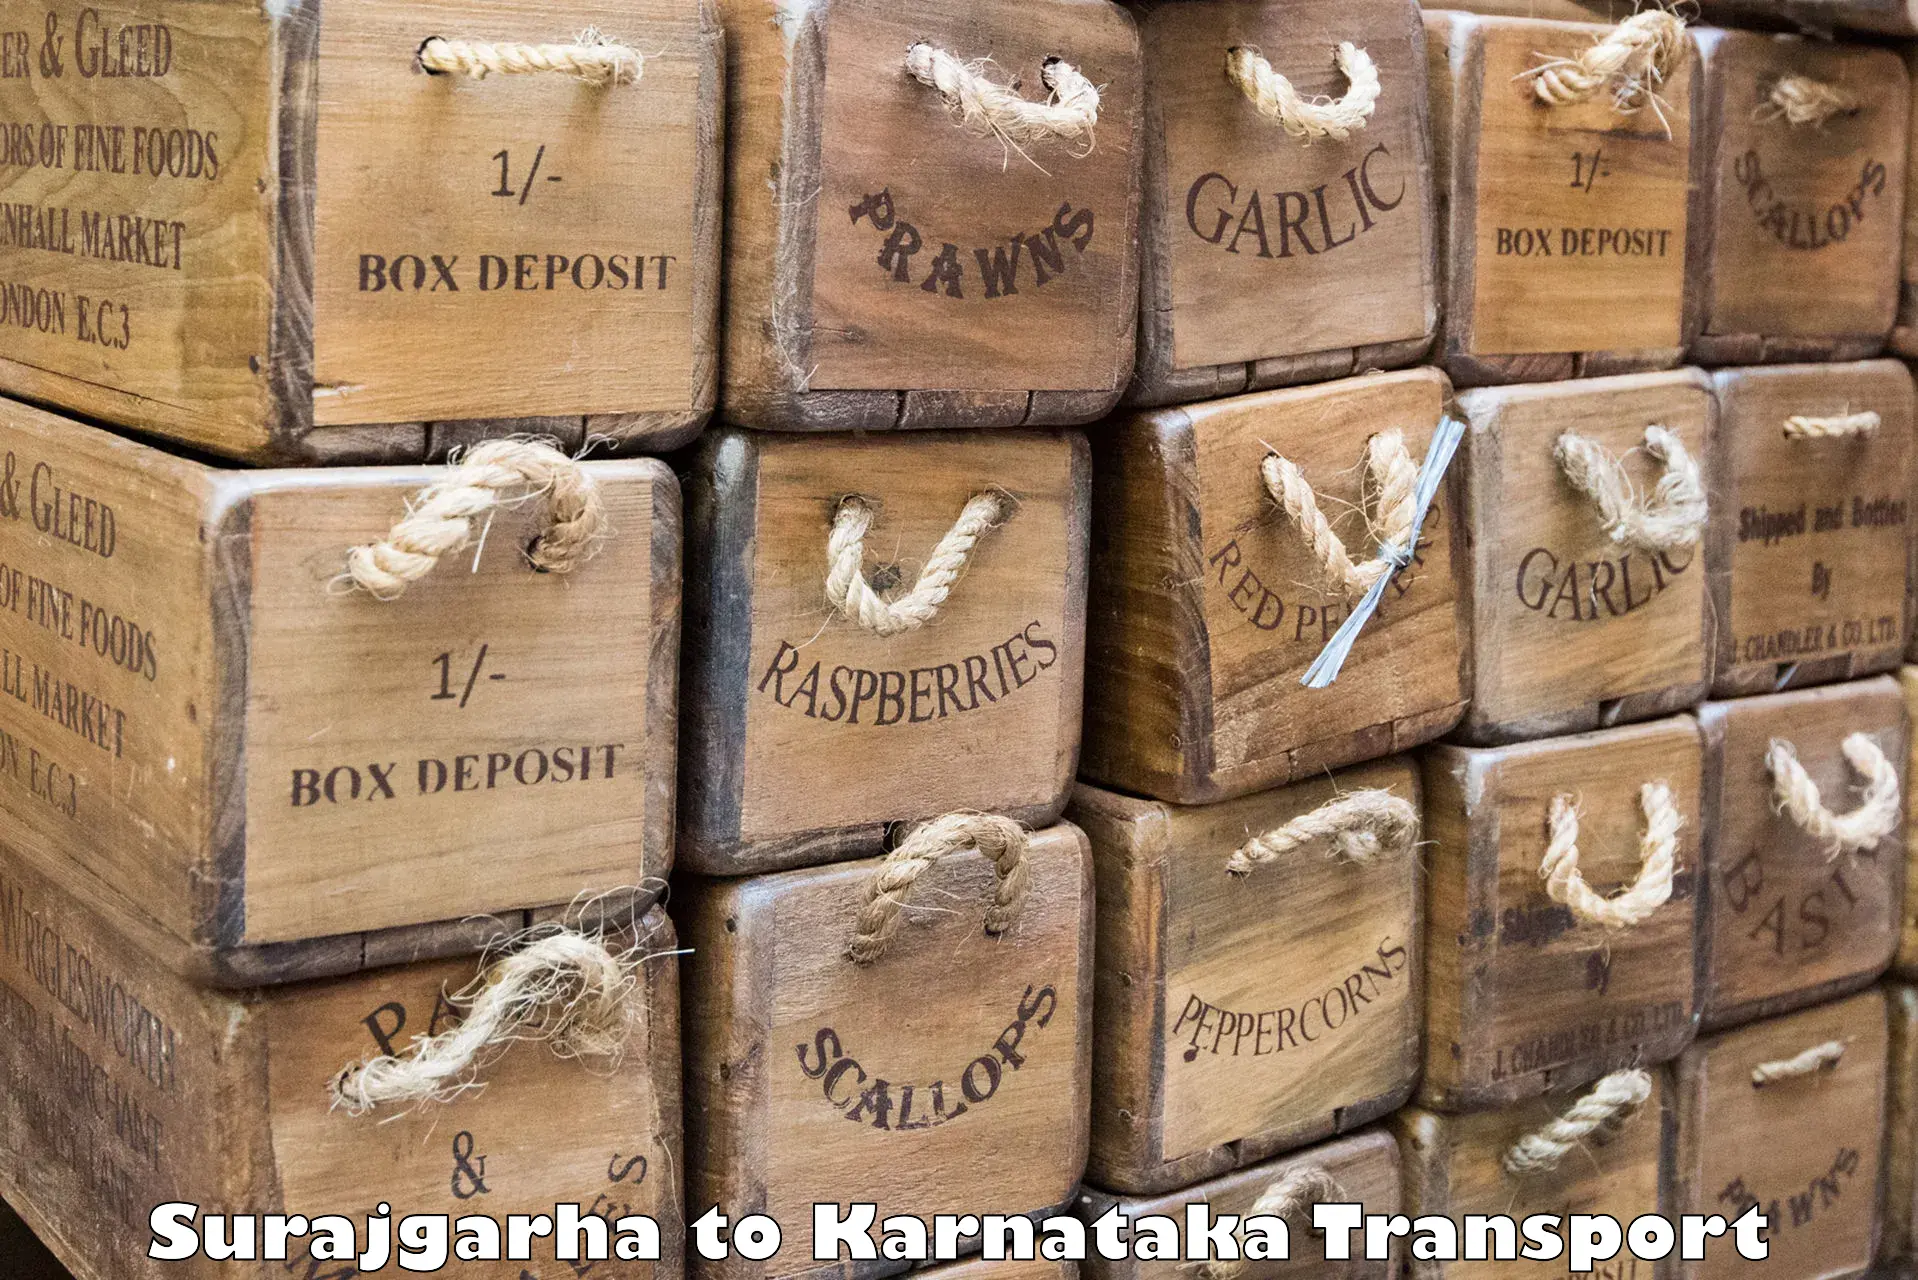 Commercial transport service Surajgarha to Uttara Kannada